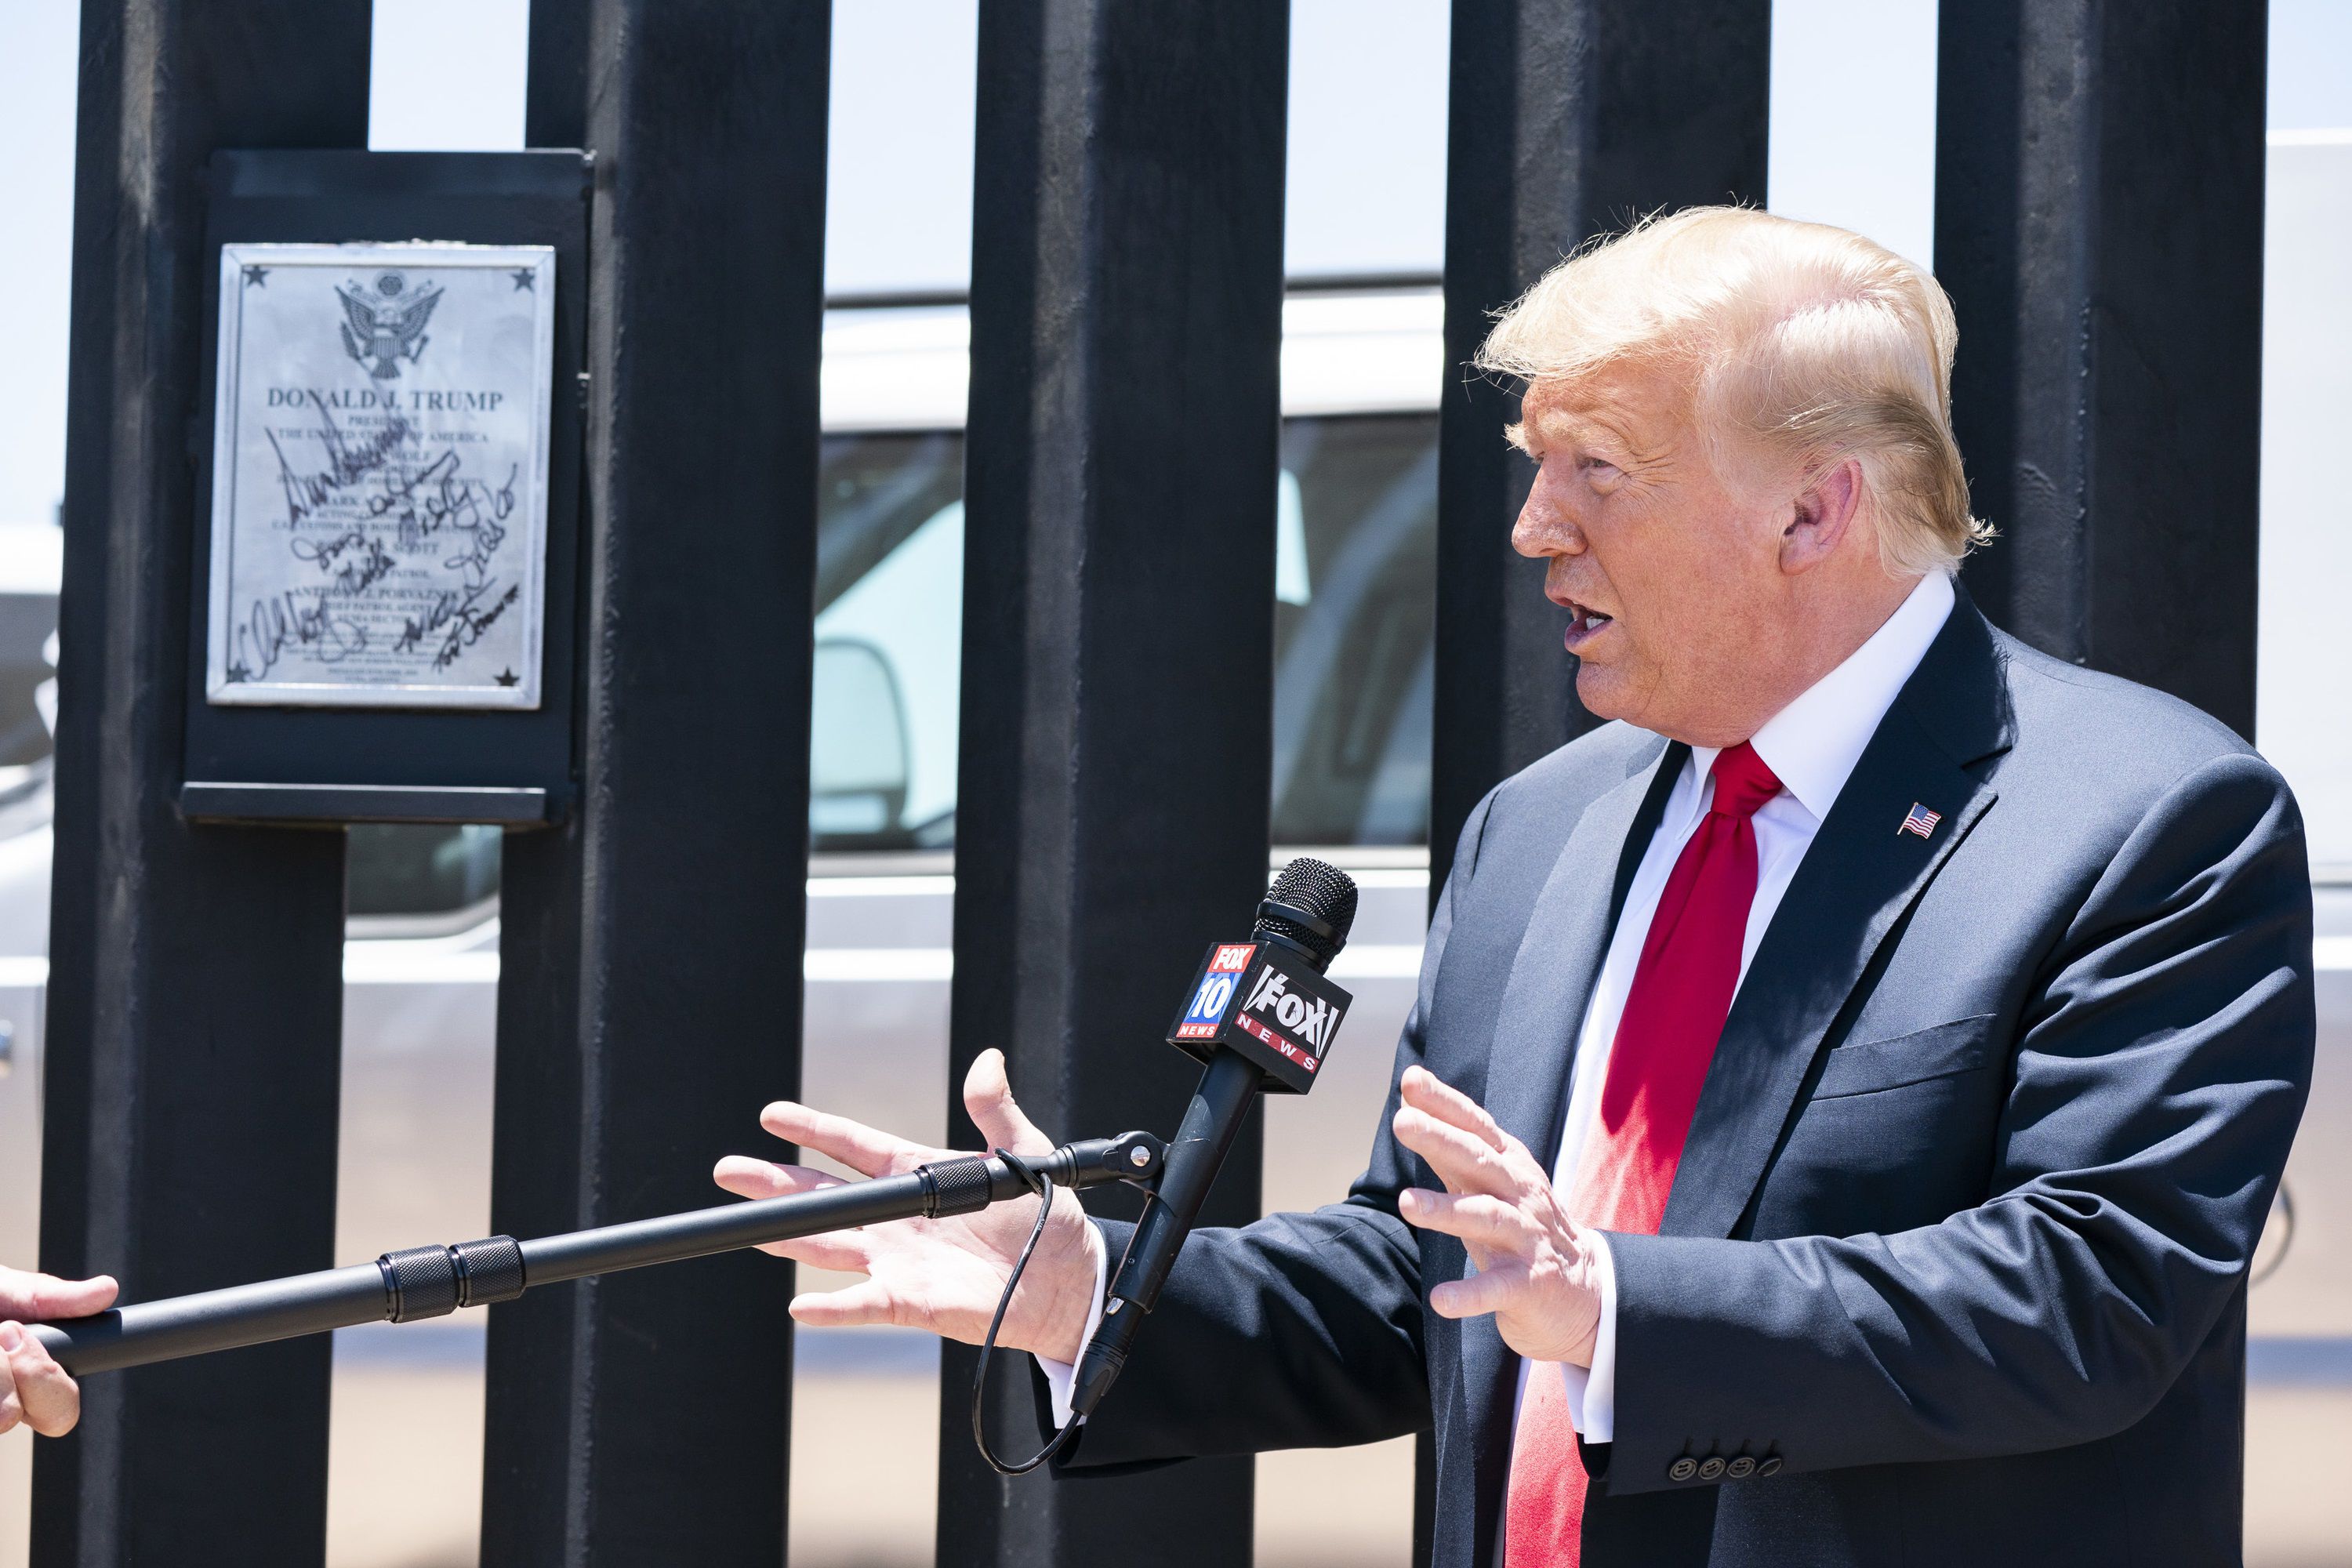 28/10/2020 El presidente de Estados Unidos, Donald Trump, durante la inauguración de una parte del nuevo muro fronterizo que separa la frontera sur con México.
SOCIEDAD NORTEAMÉRICA ESTADOS UNIDOS INTERNACIONAL NORTEAMÉRICA
SMG / ZUMA PRESS / CONTACTOPHOTO
